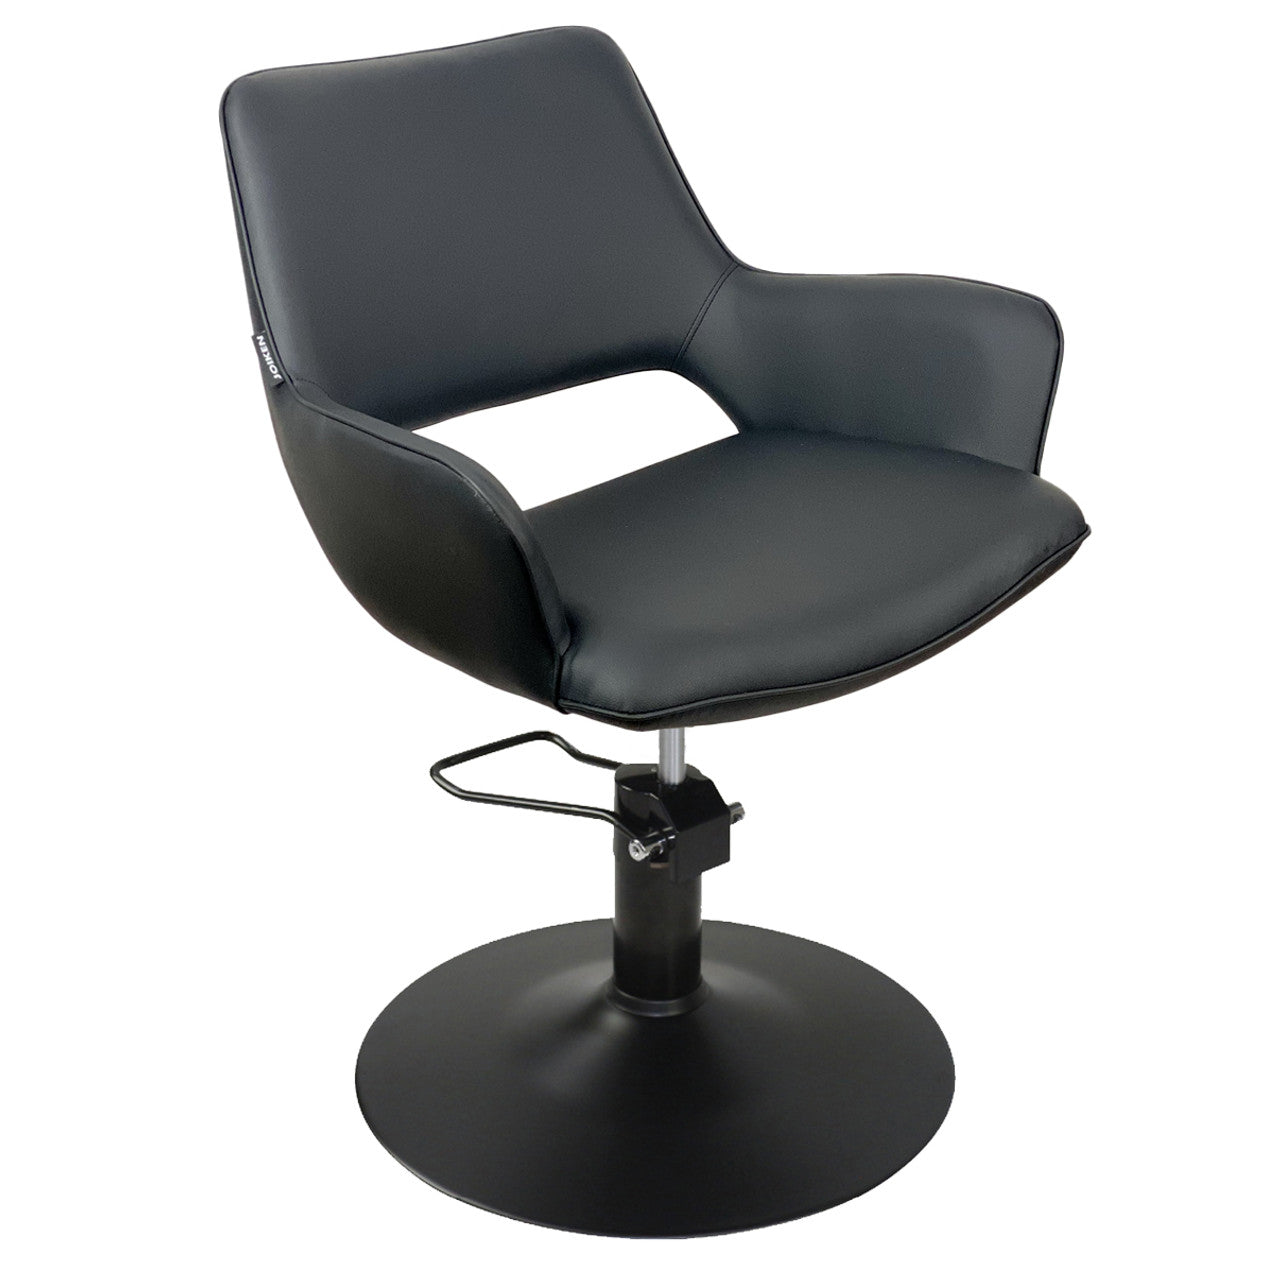 Indigo Black Styling Chair - BLACK Disc Hydraulic